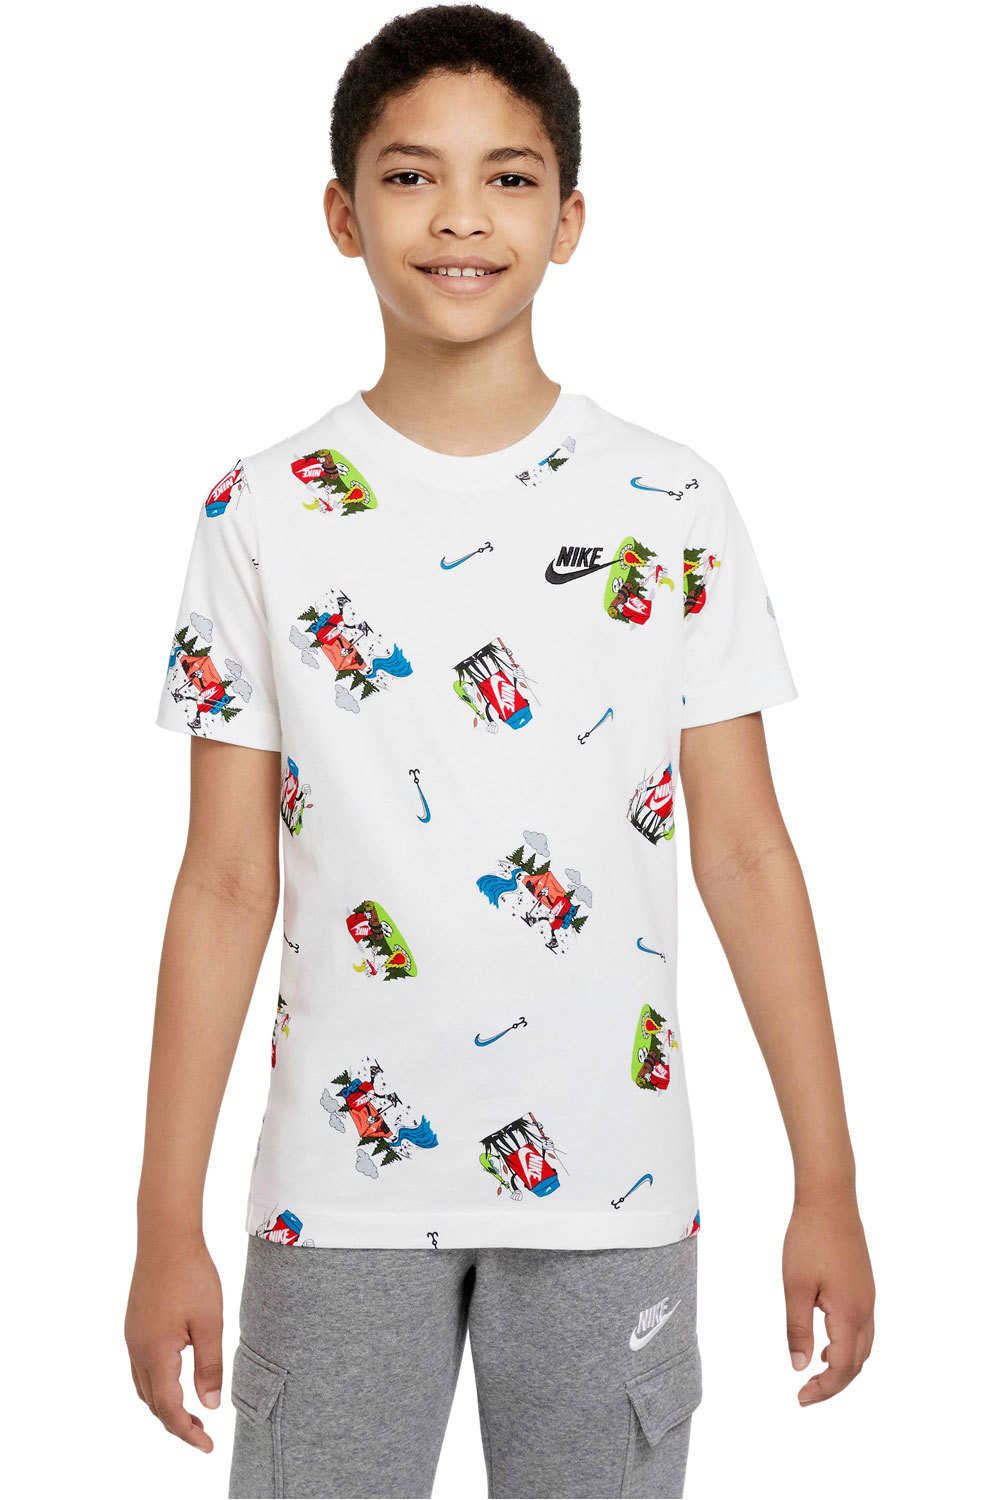 Nike camiseta manga corta niño B NSW TEE BOXY AOP vista frontal